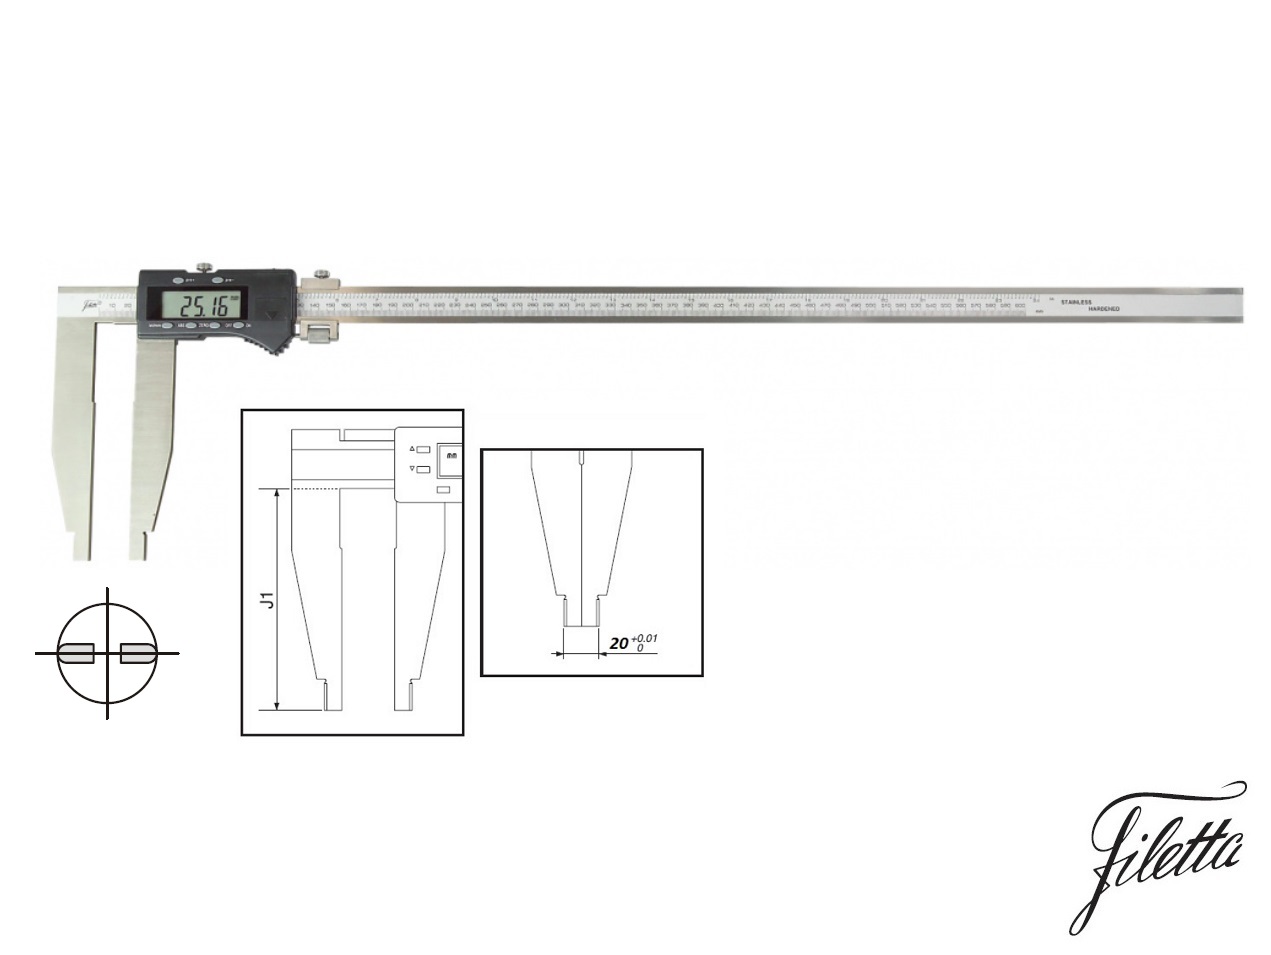 Digitální posuvné měřítko Filetta 0-1000 mm  bez nožíků, s měřicími čelistmi 200 mm